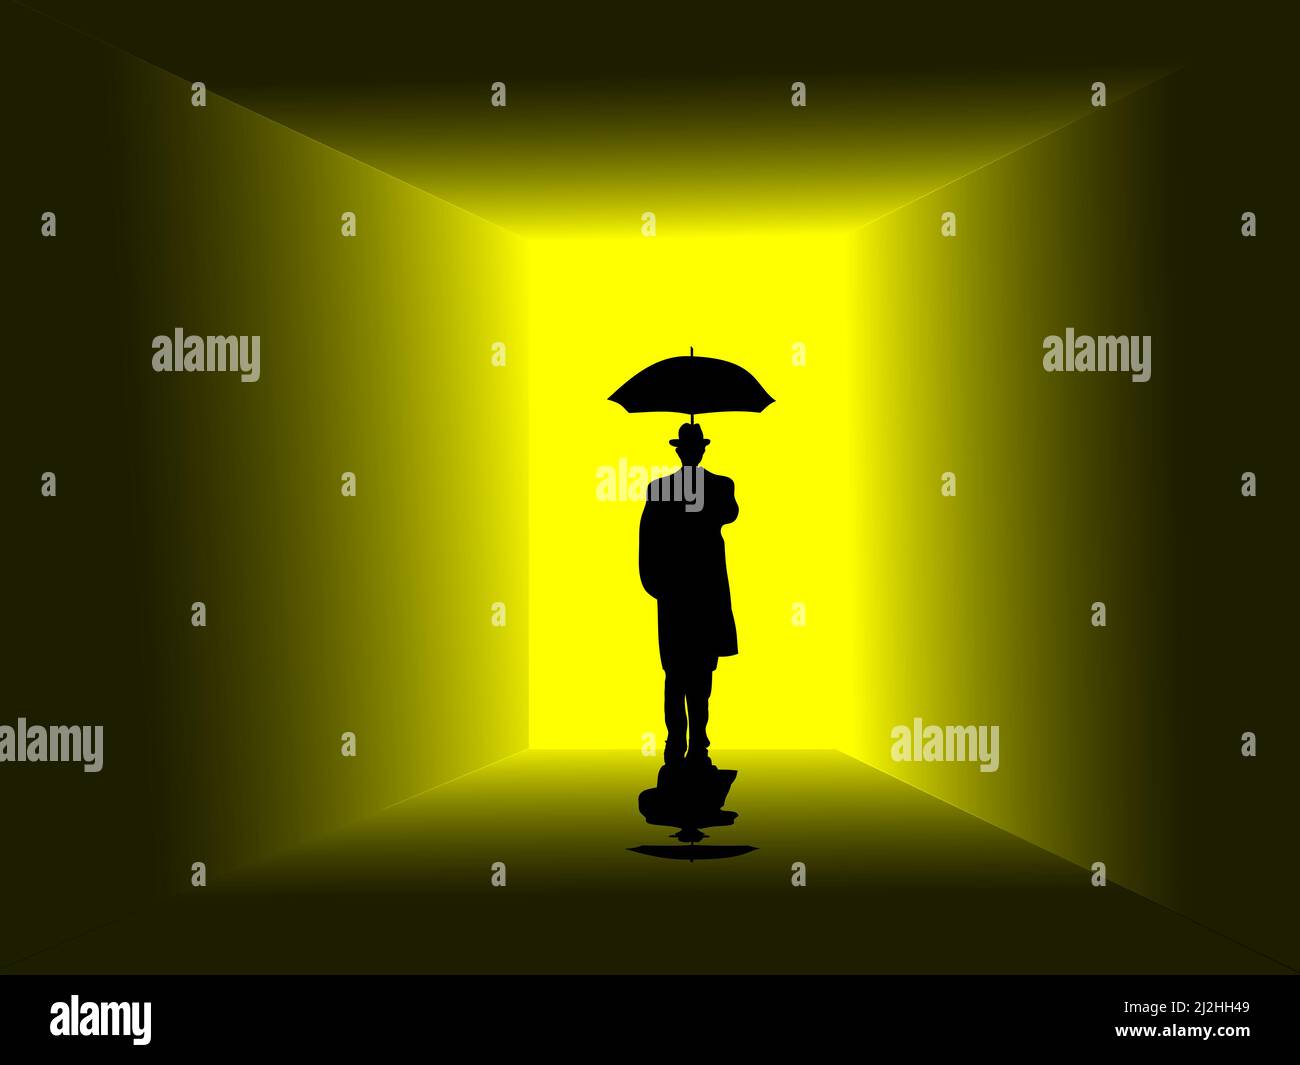 Un homme dans un manteau noir, sa main droite tenant un parapluie. Se tenait devant la porte avec une lumière jaune. Illustration de Vecteur